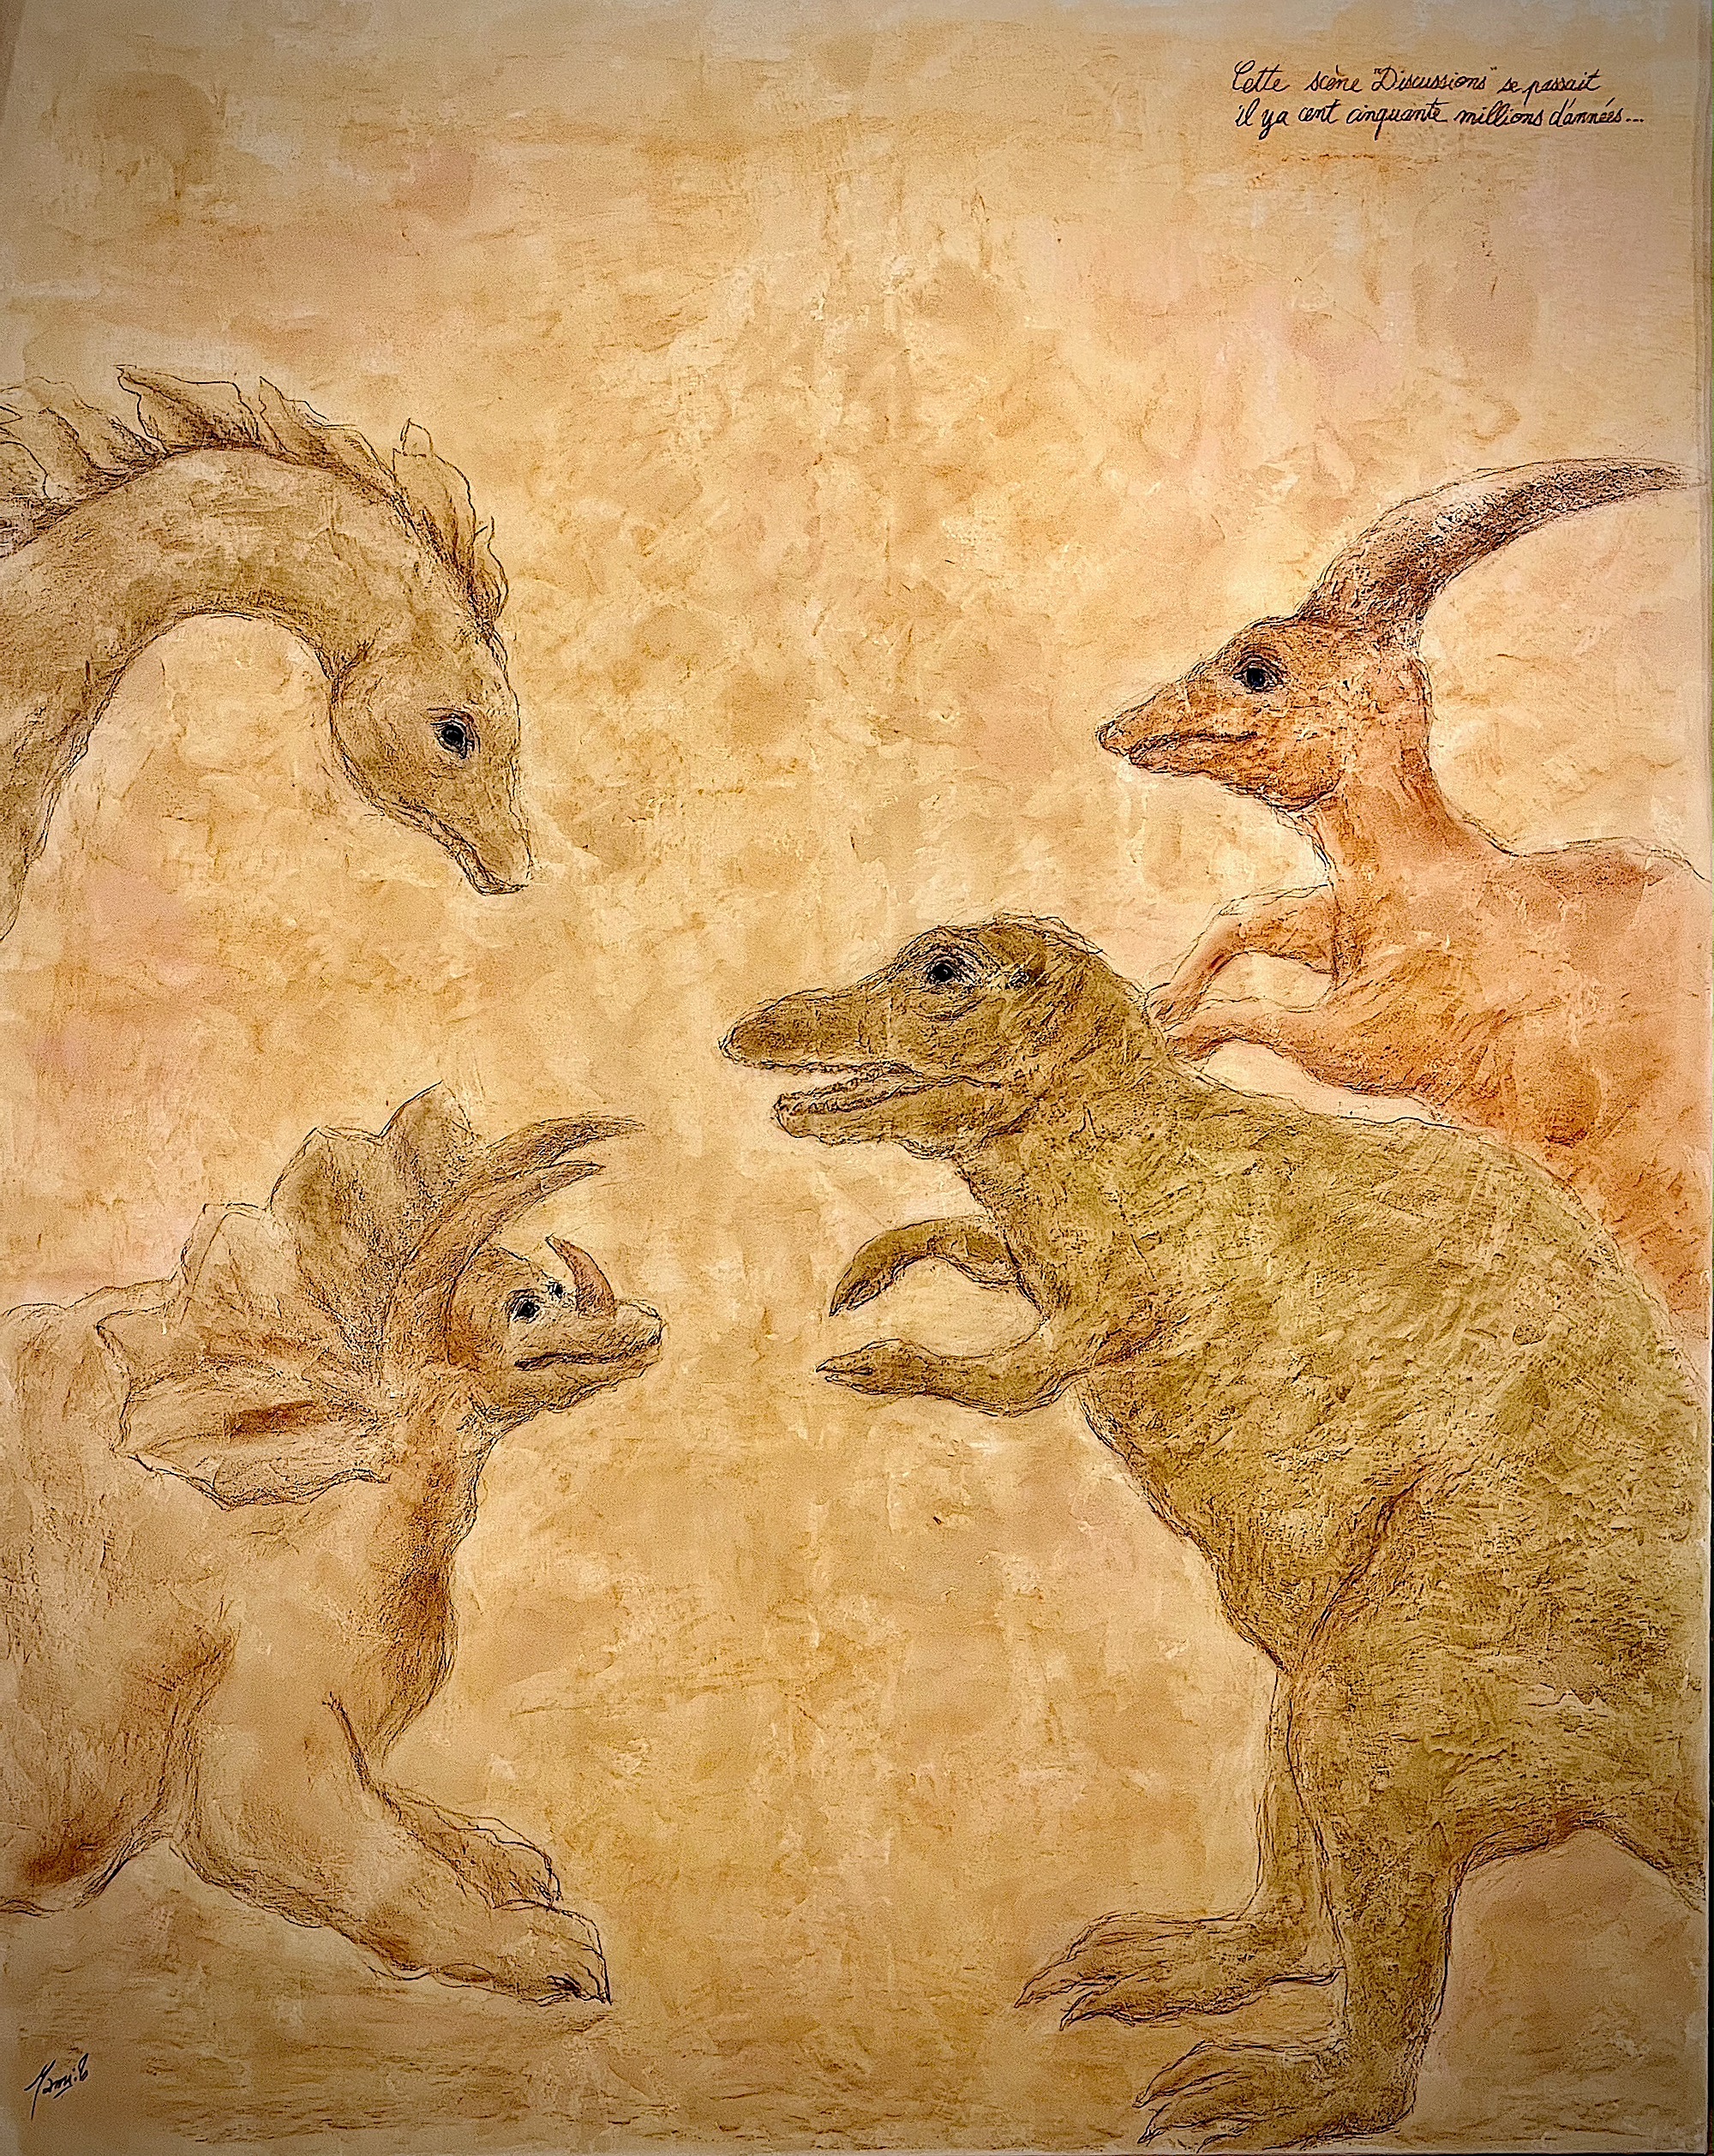 MAMI Images et Poésie, Histoires de Dinosaures ( 160 x 130 cm )